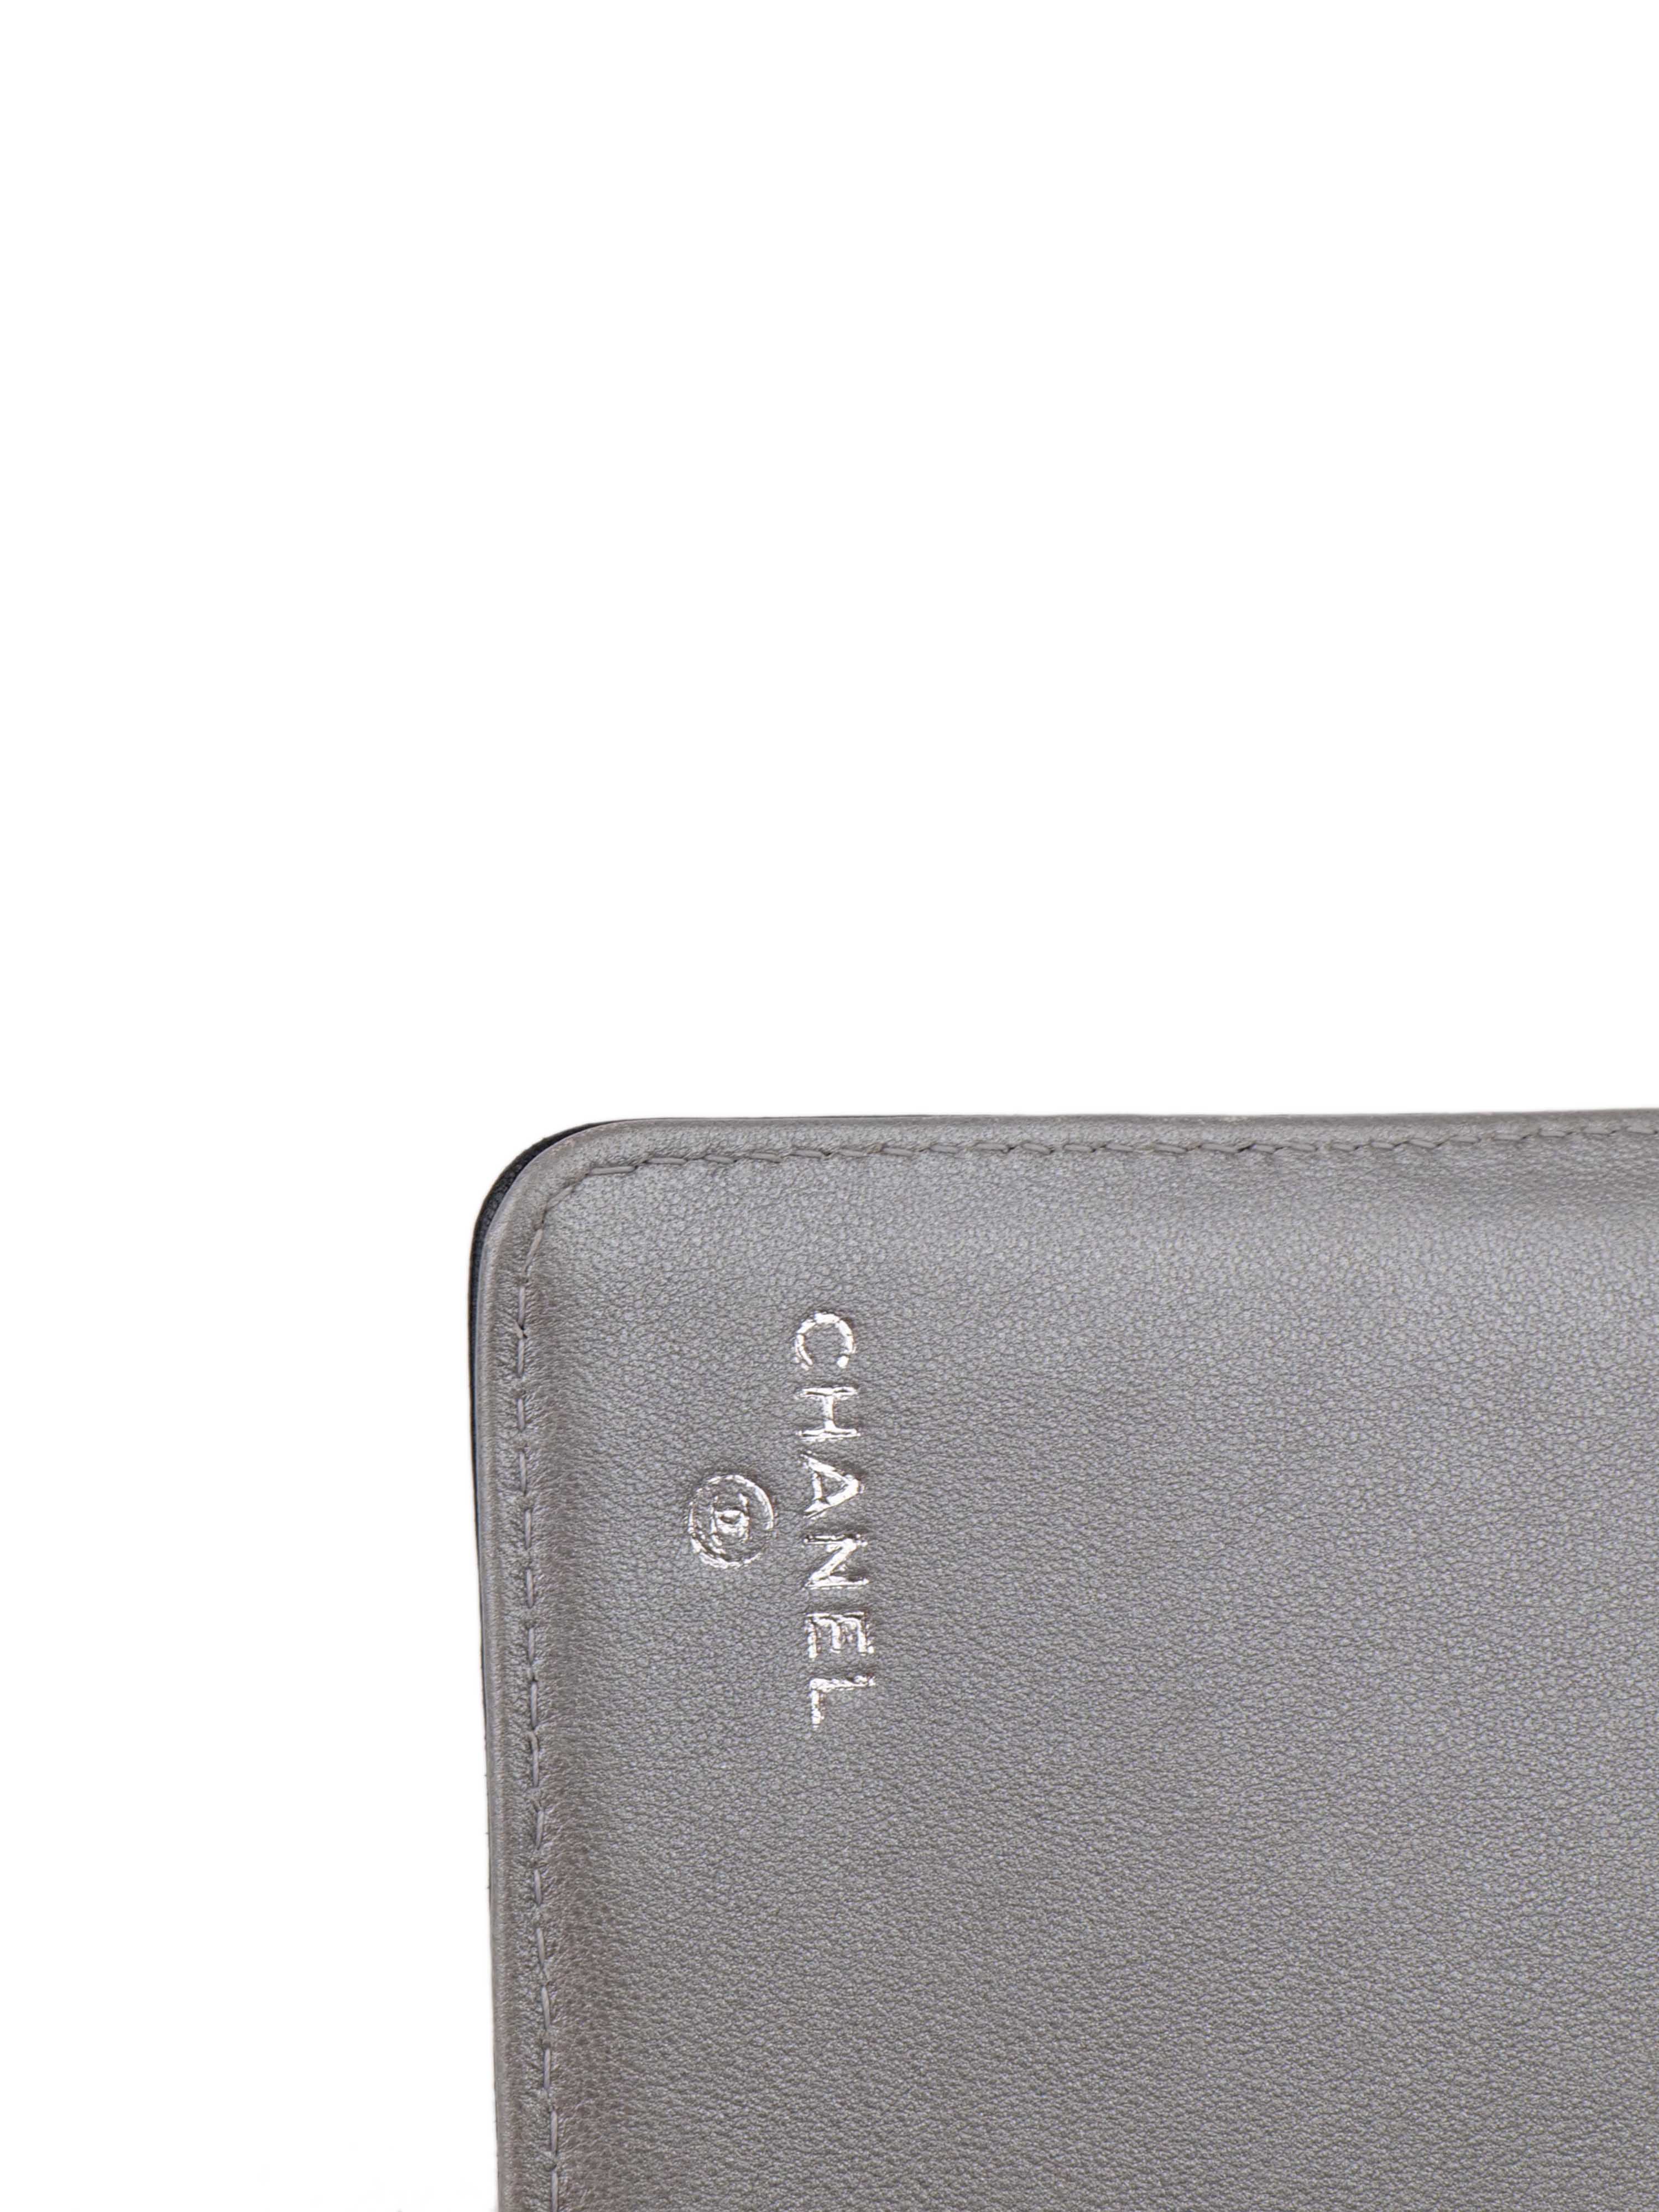 Chanel Black Camellia Wallet.